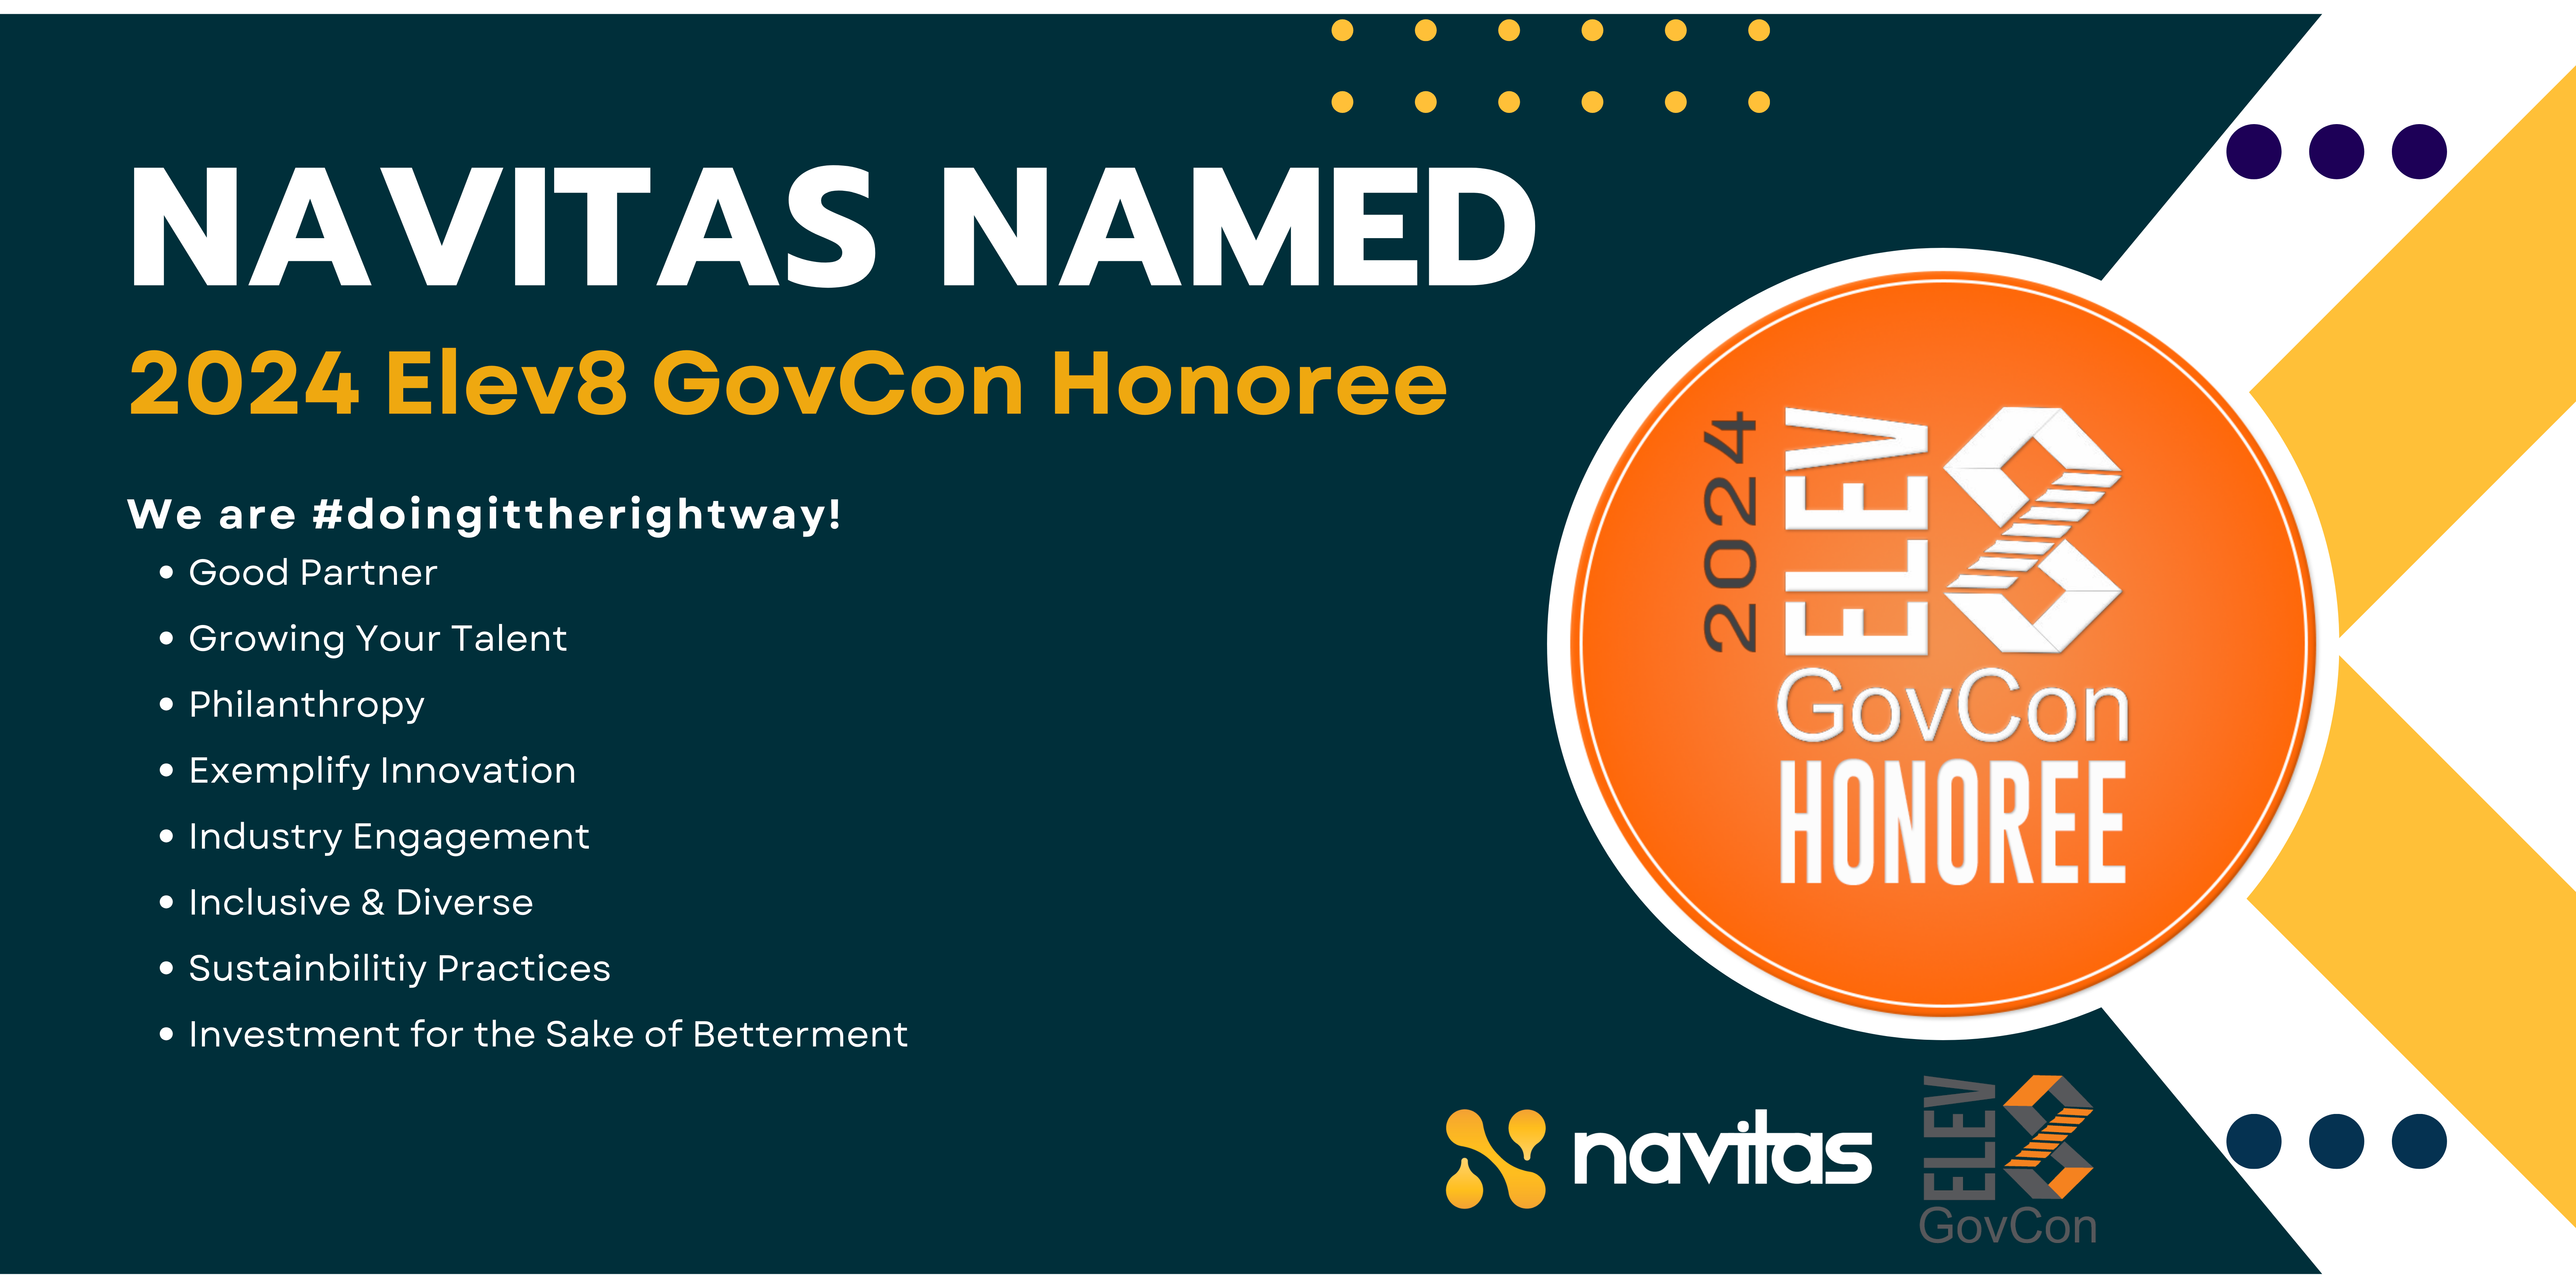 Navitas Named 2024 Elev8 GovCon Honoree!